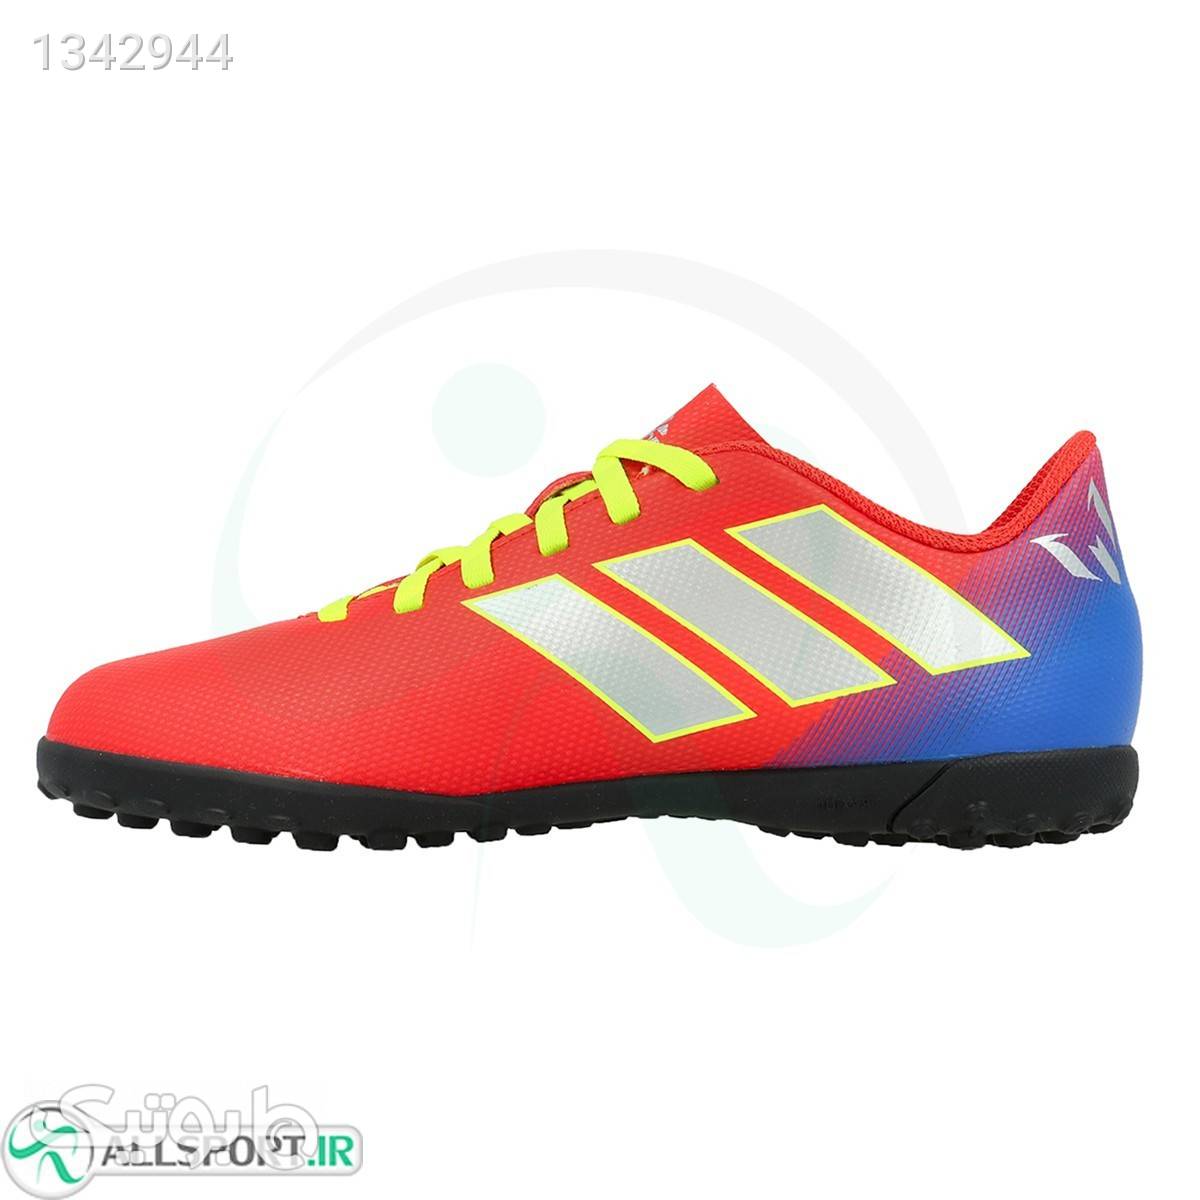 کفش چمن مصنوعی سایز کوچک آدیداس نمزیز Adidas Nemeziz Messi 18.4 Tf JR CM8642